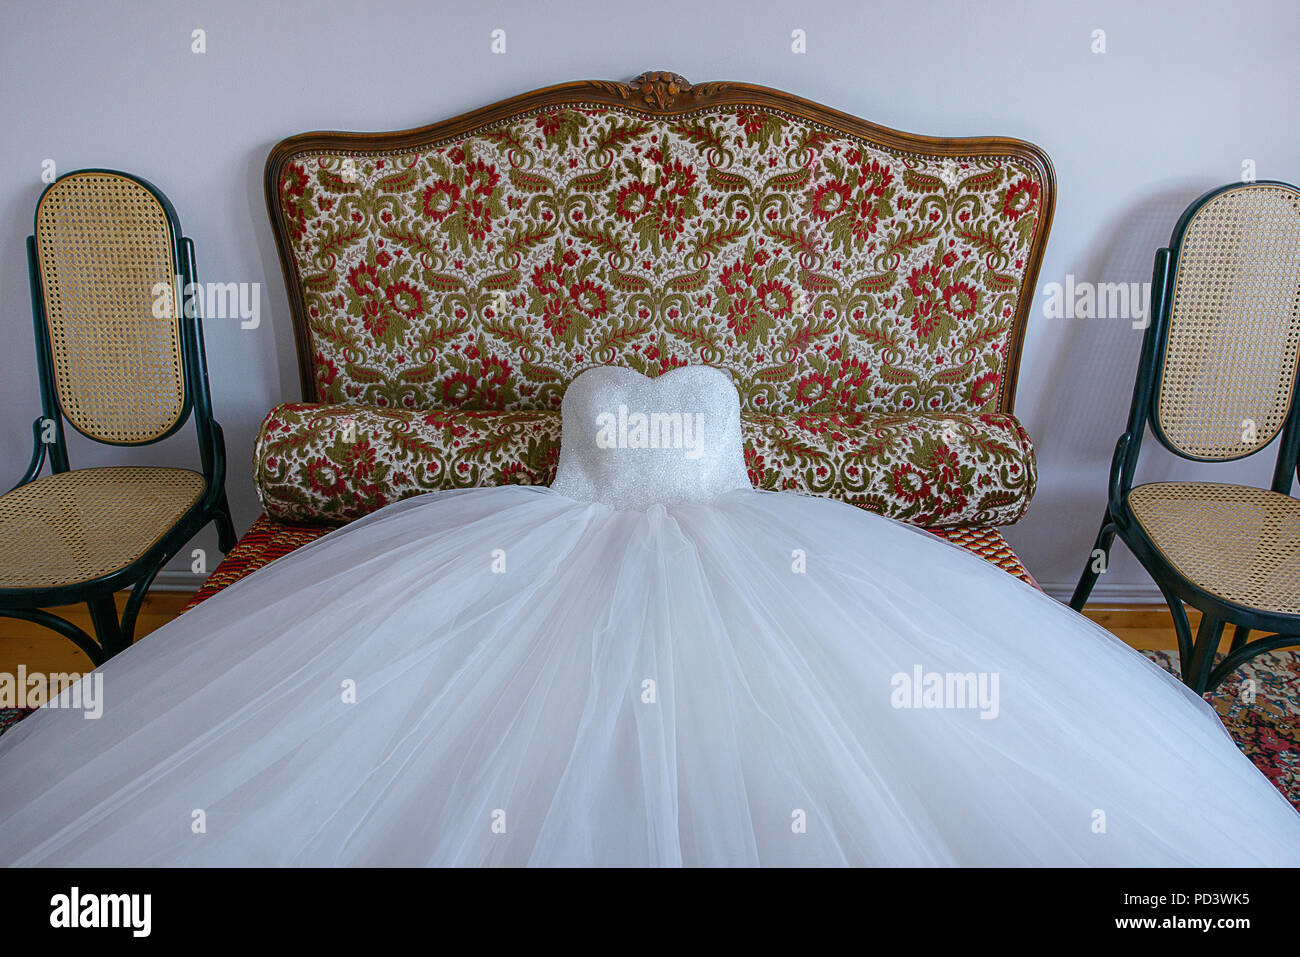 Incredibile Palla abito abiti da sposa spalmato su di un piccolo divano, pronto per la sposa in preparazione per il grande giorno Foto Stock